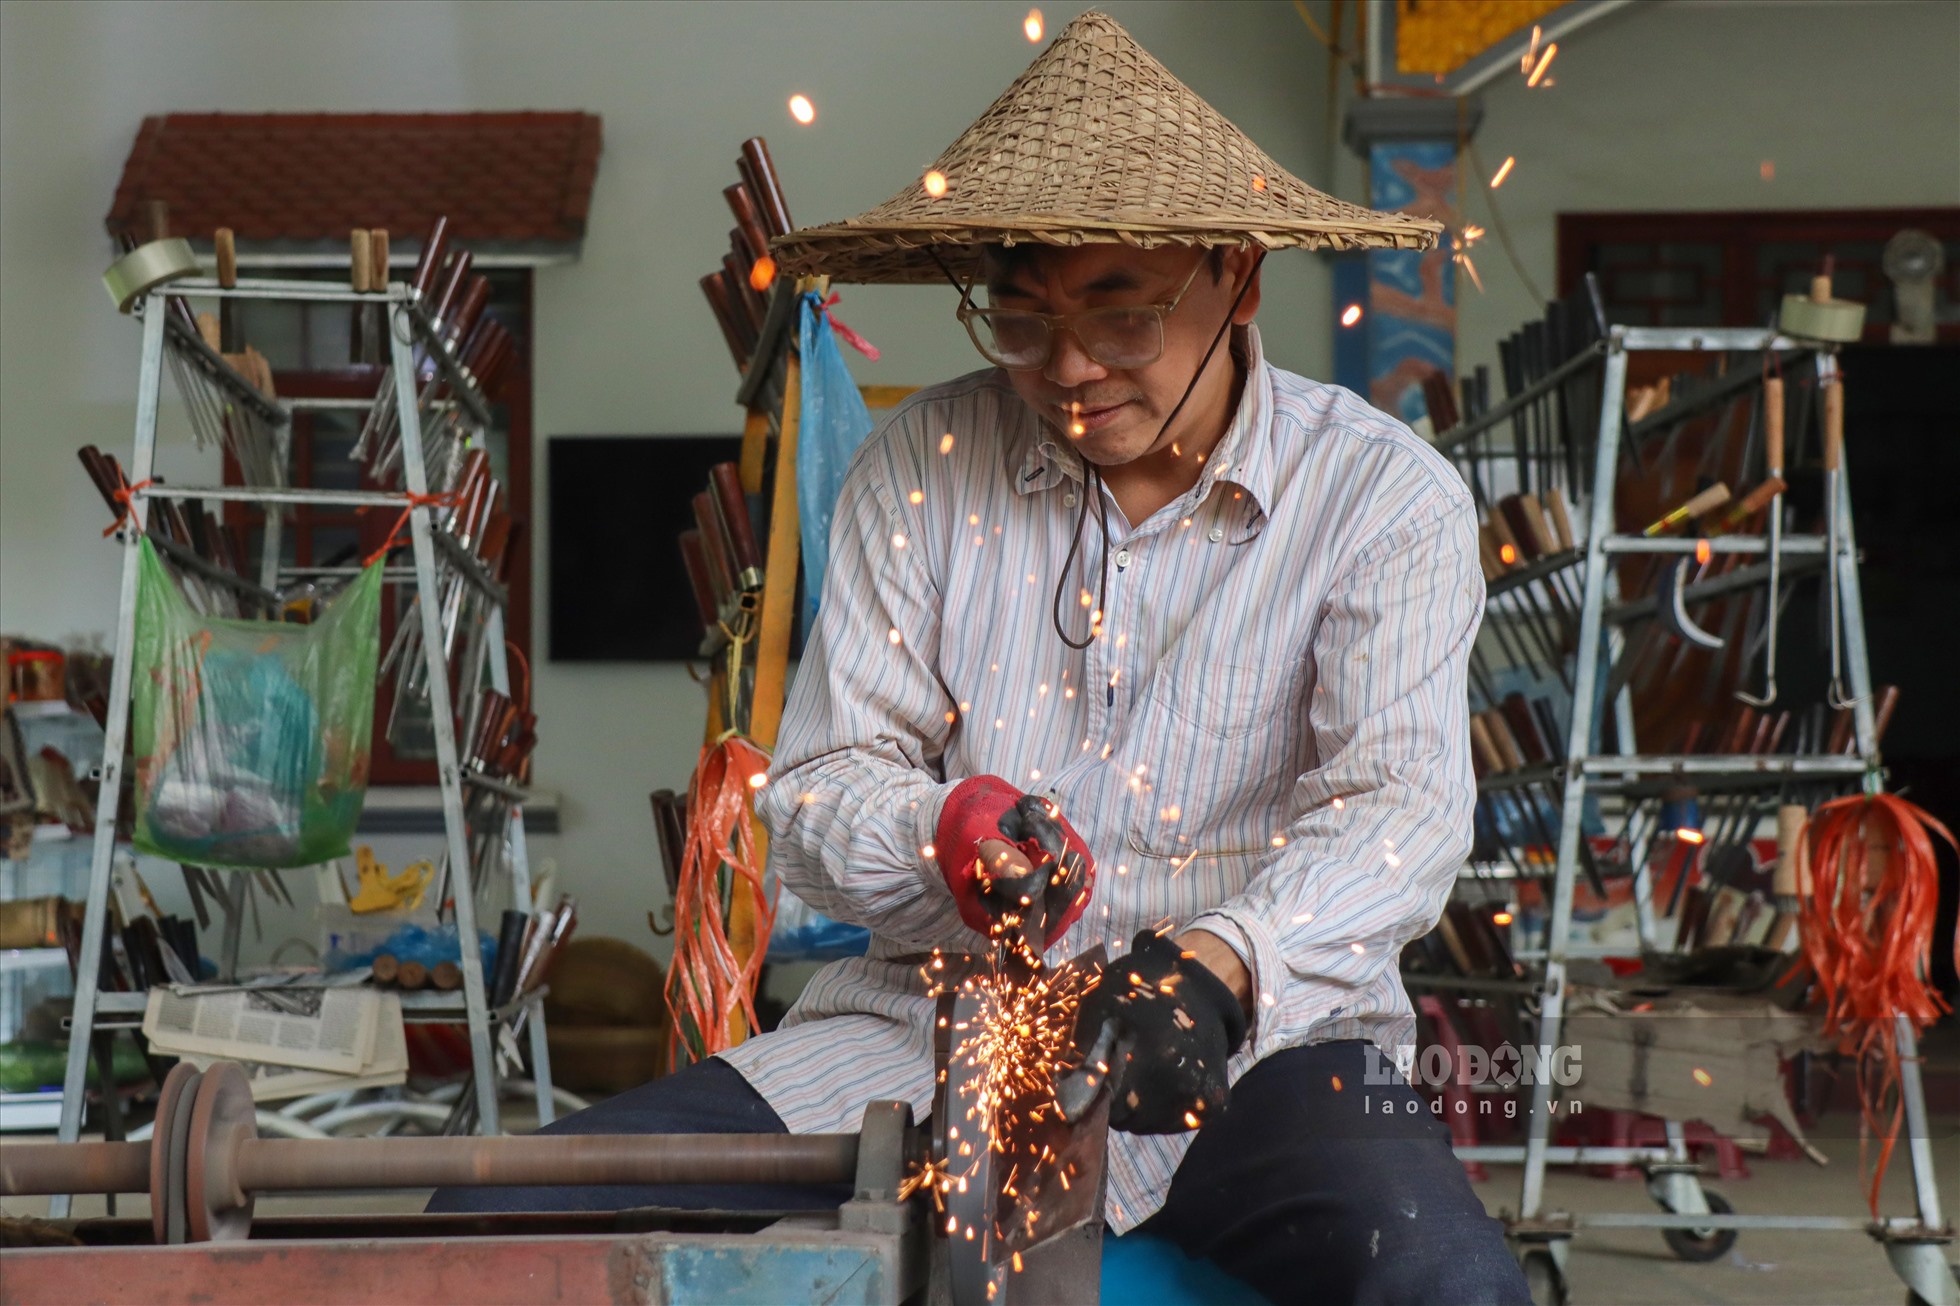 Ấy vậy mà trải qua hàng trăm năm nhưng nghề rèn truyền thống của đồng bào Nùng An nơi đây không bị mai một như nhiều làng nghề truyền thống khác, mà còn phát triển từng ngày. Vào thời điểm nghề truyền thống phồn thịnh nhất thì có đến hơn nửa xóm (hơn 200 hộ) rèn dao, búa.